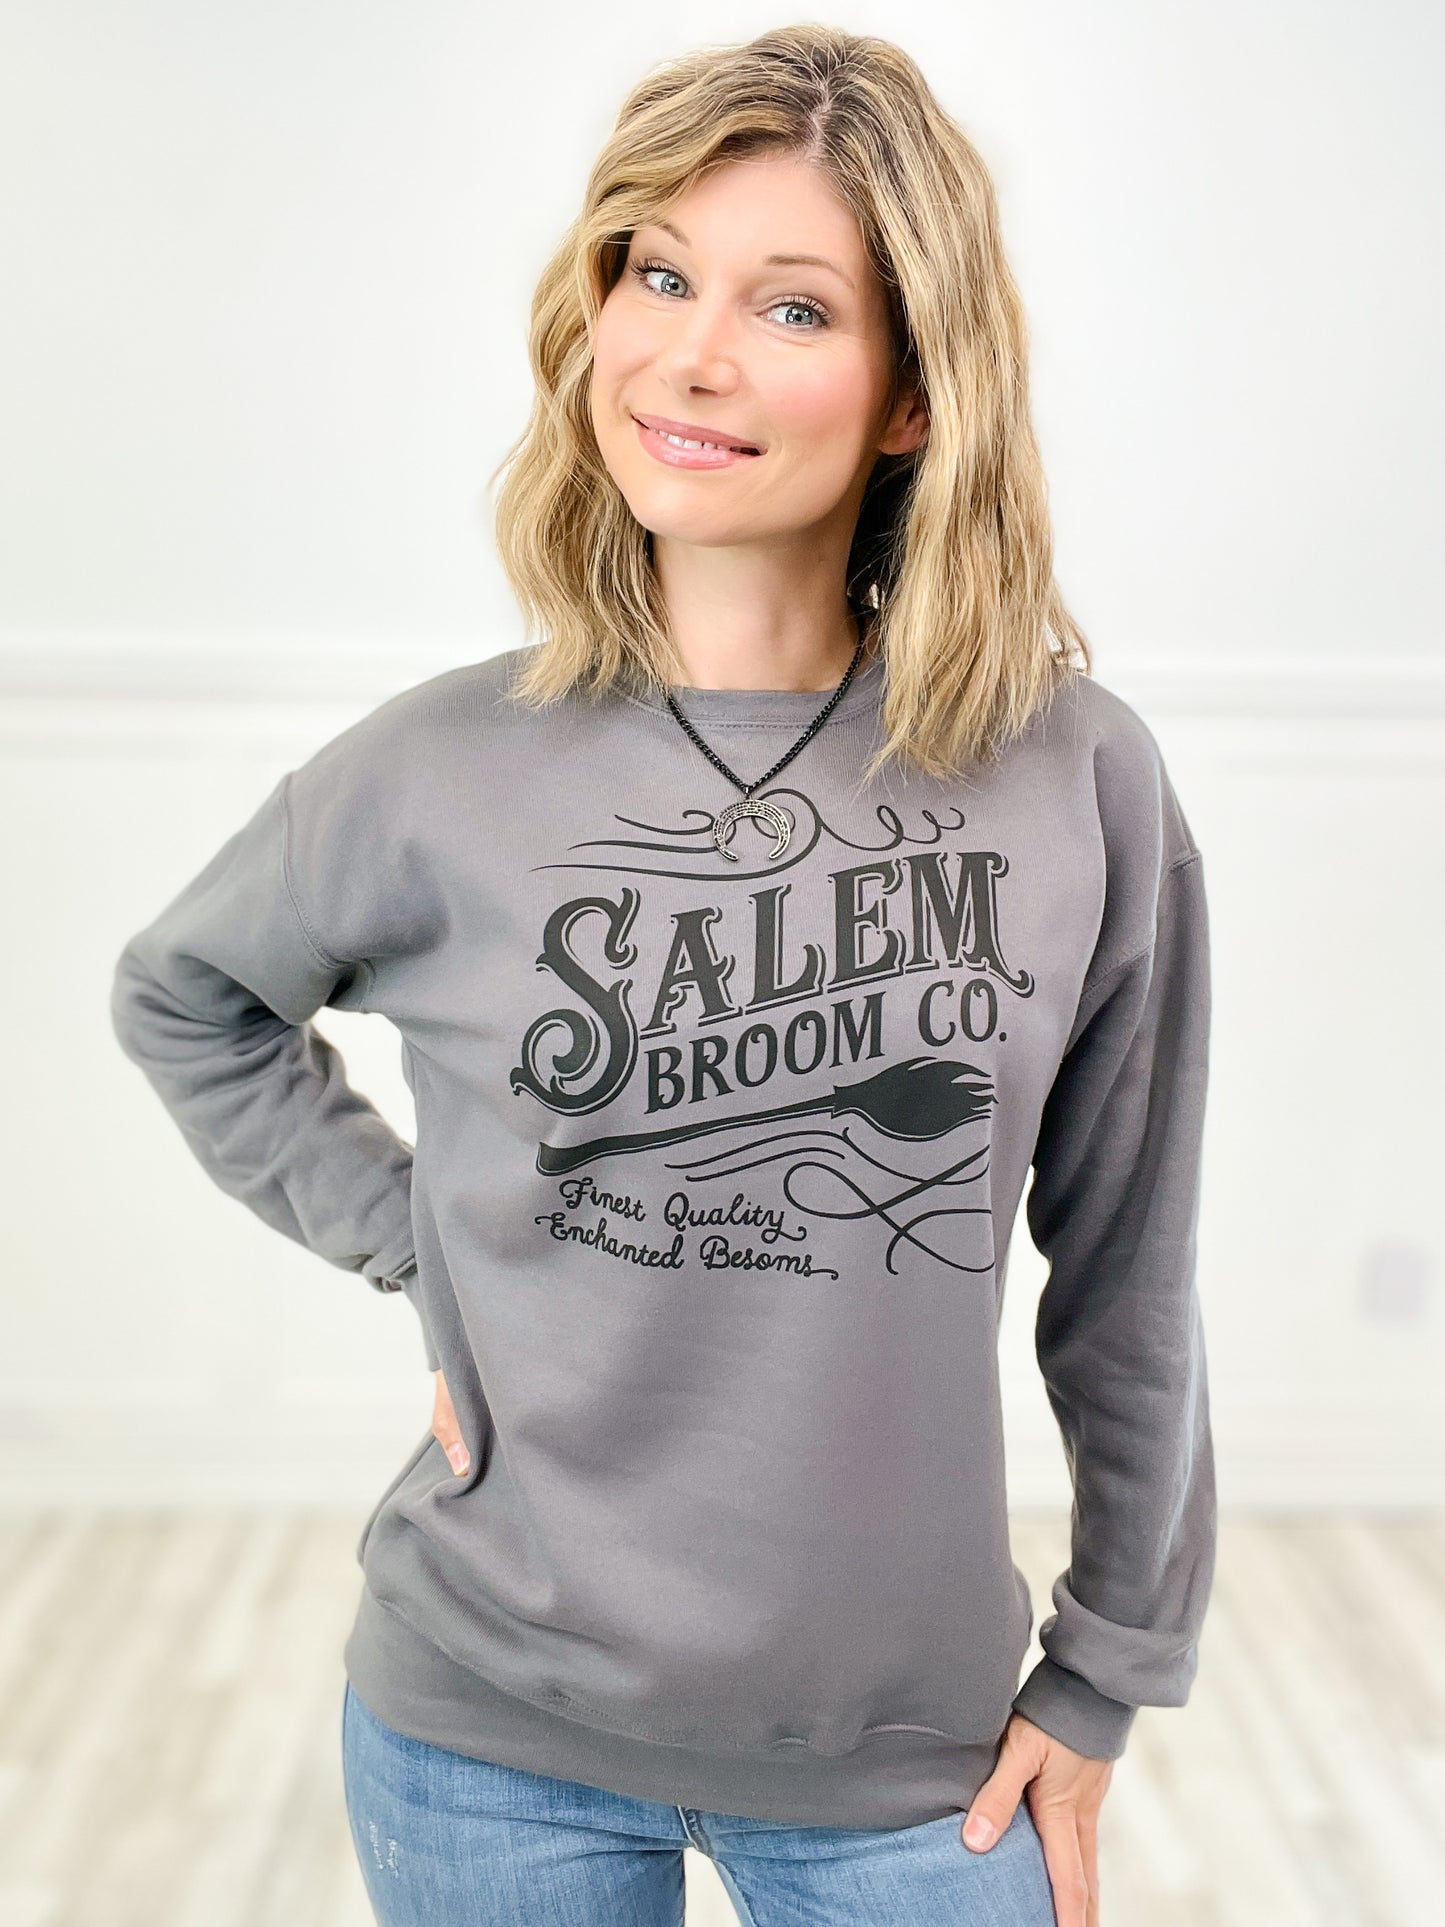 Salem Broom Co Sweatshirt Top